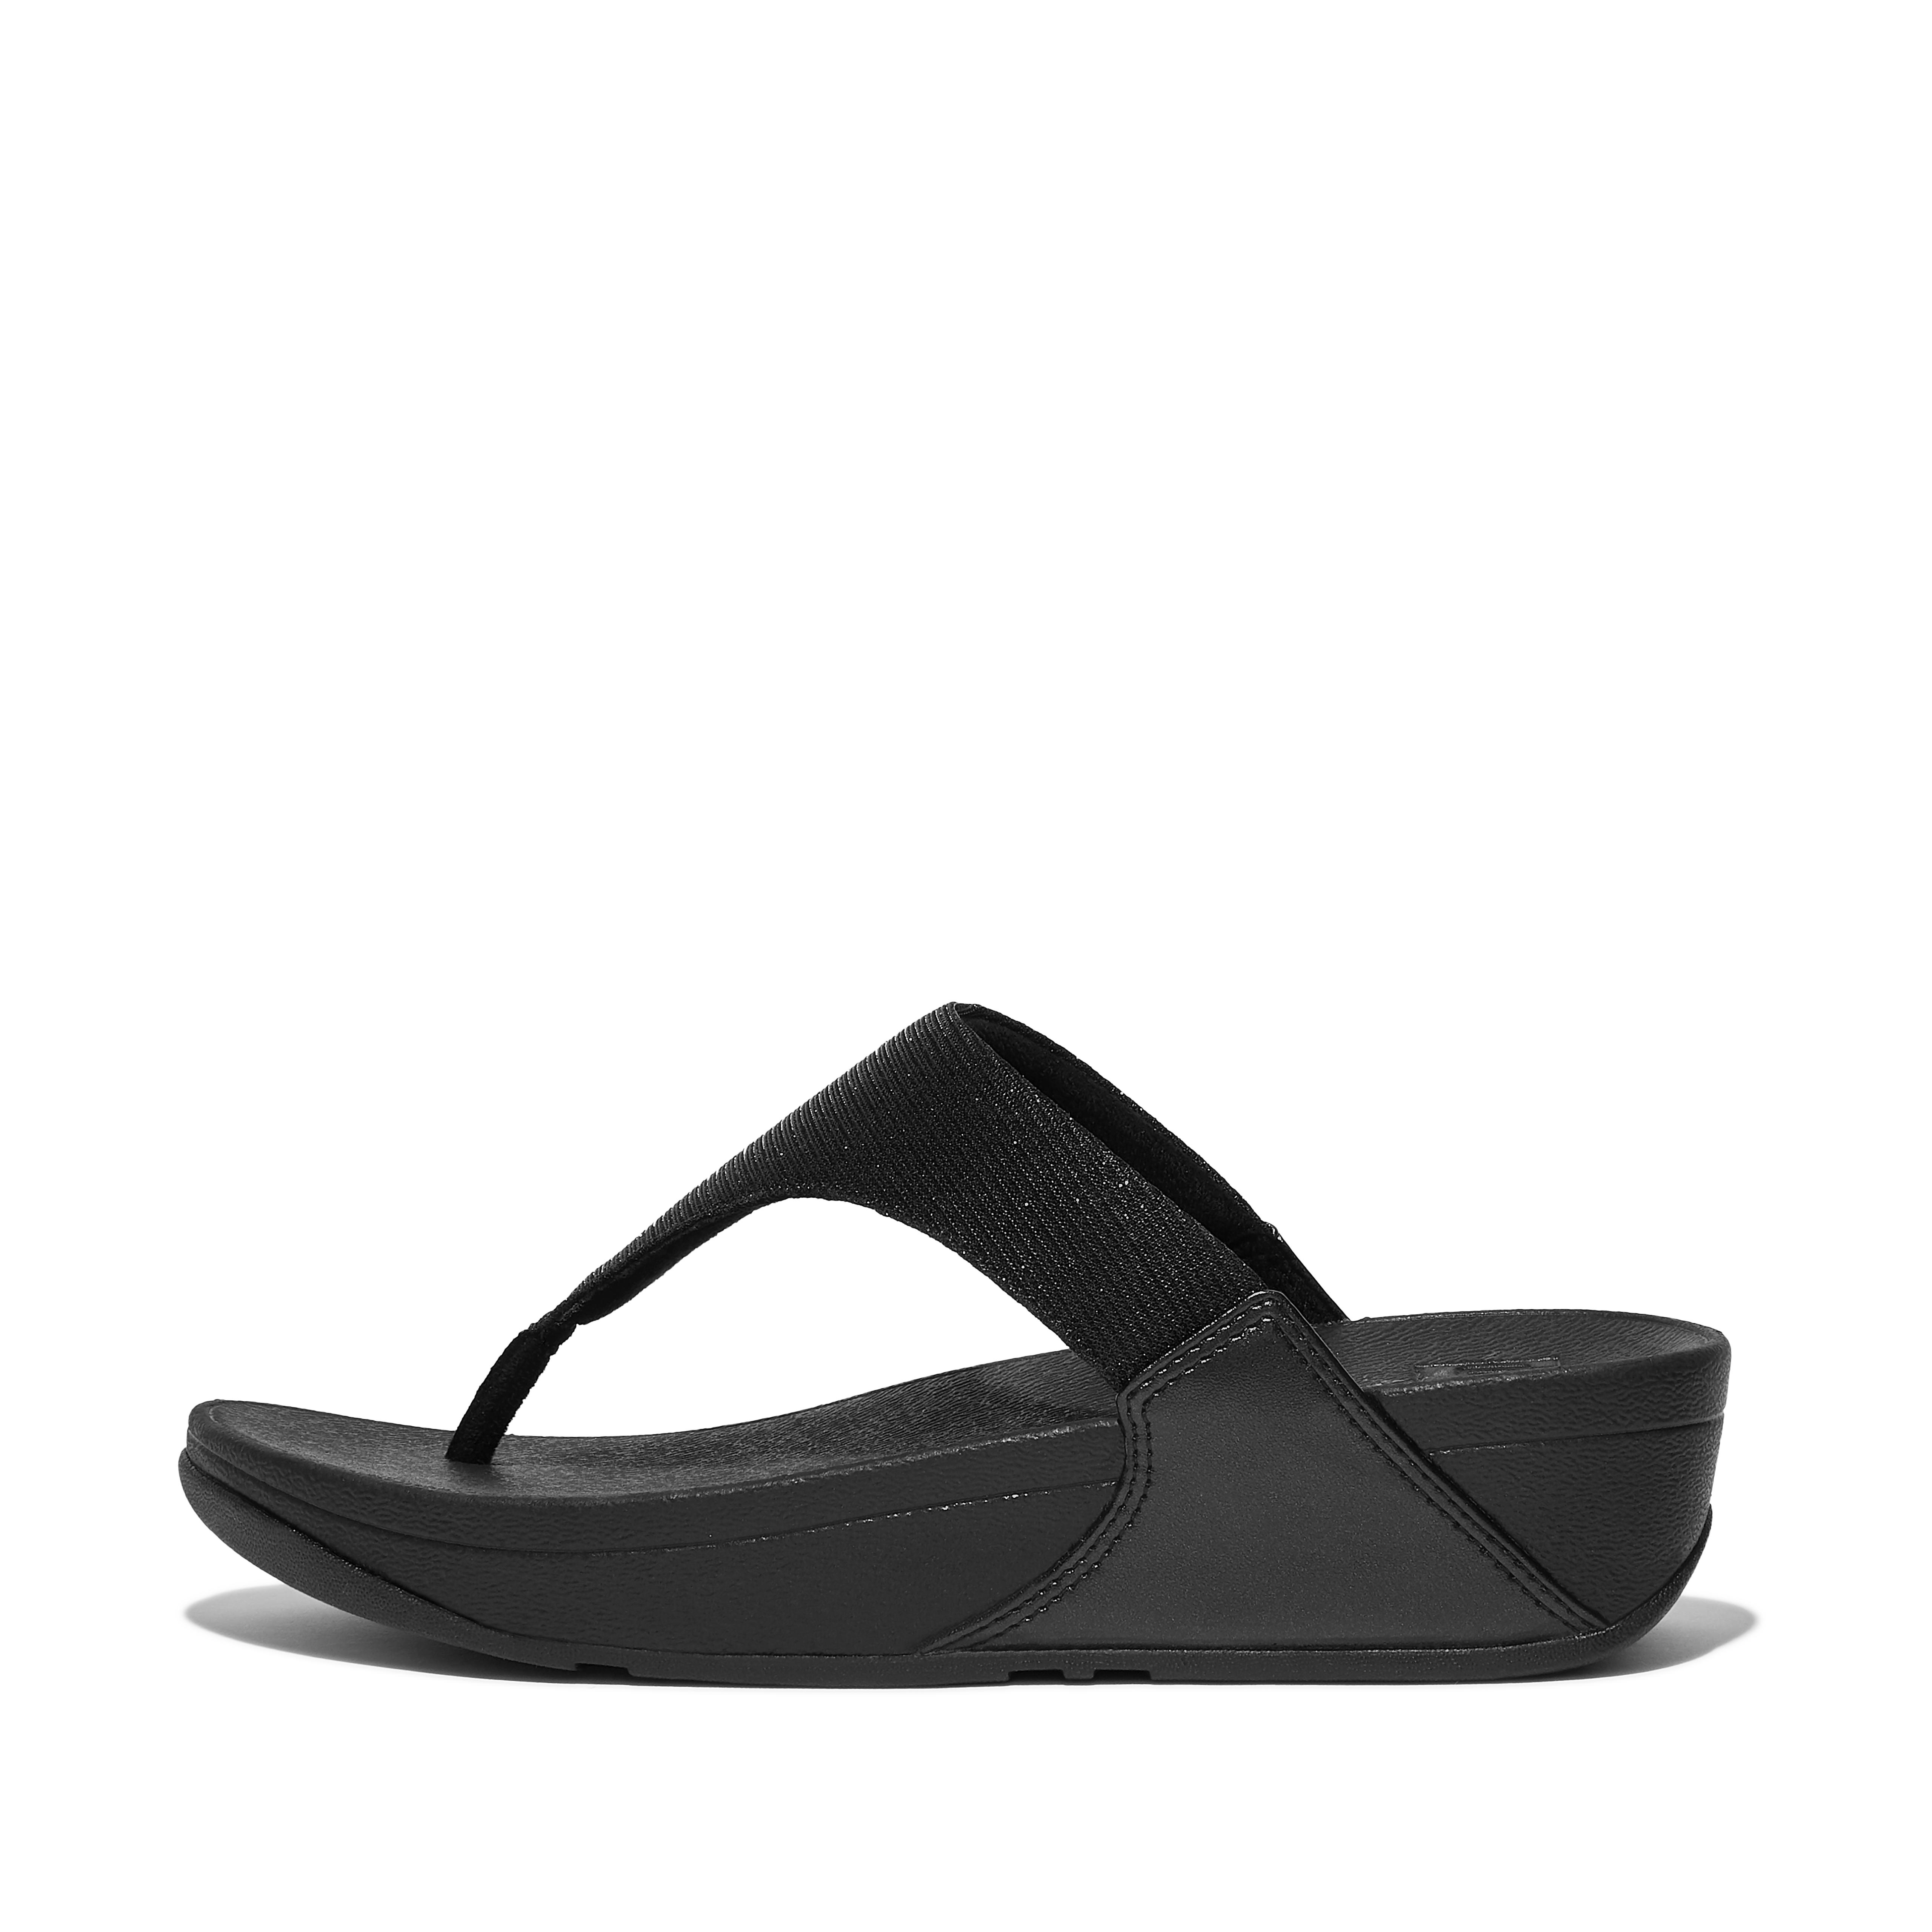 핏플랍 Fitflop Shimmerlux Toe-Post Sandals,All Black